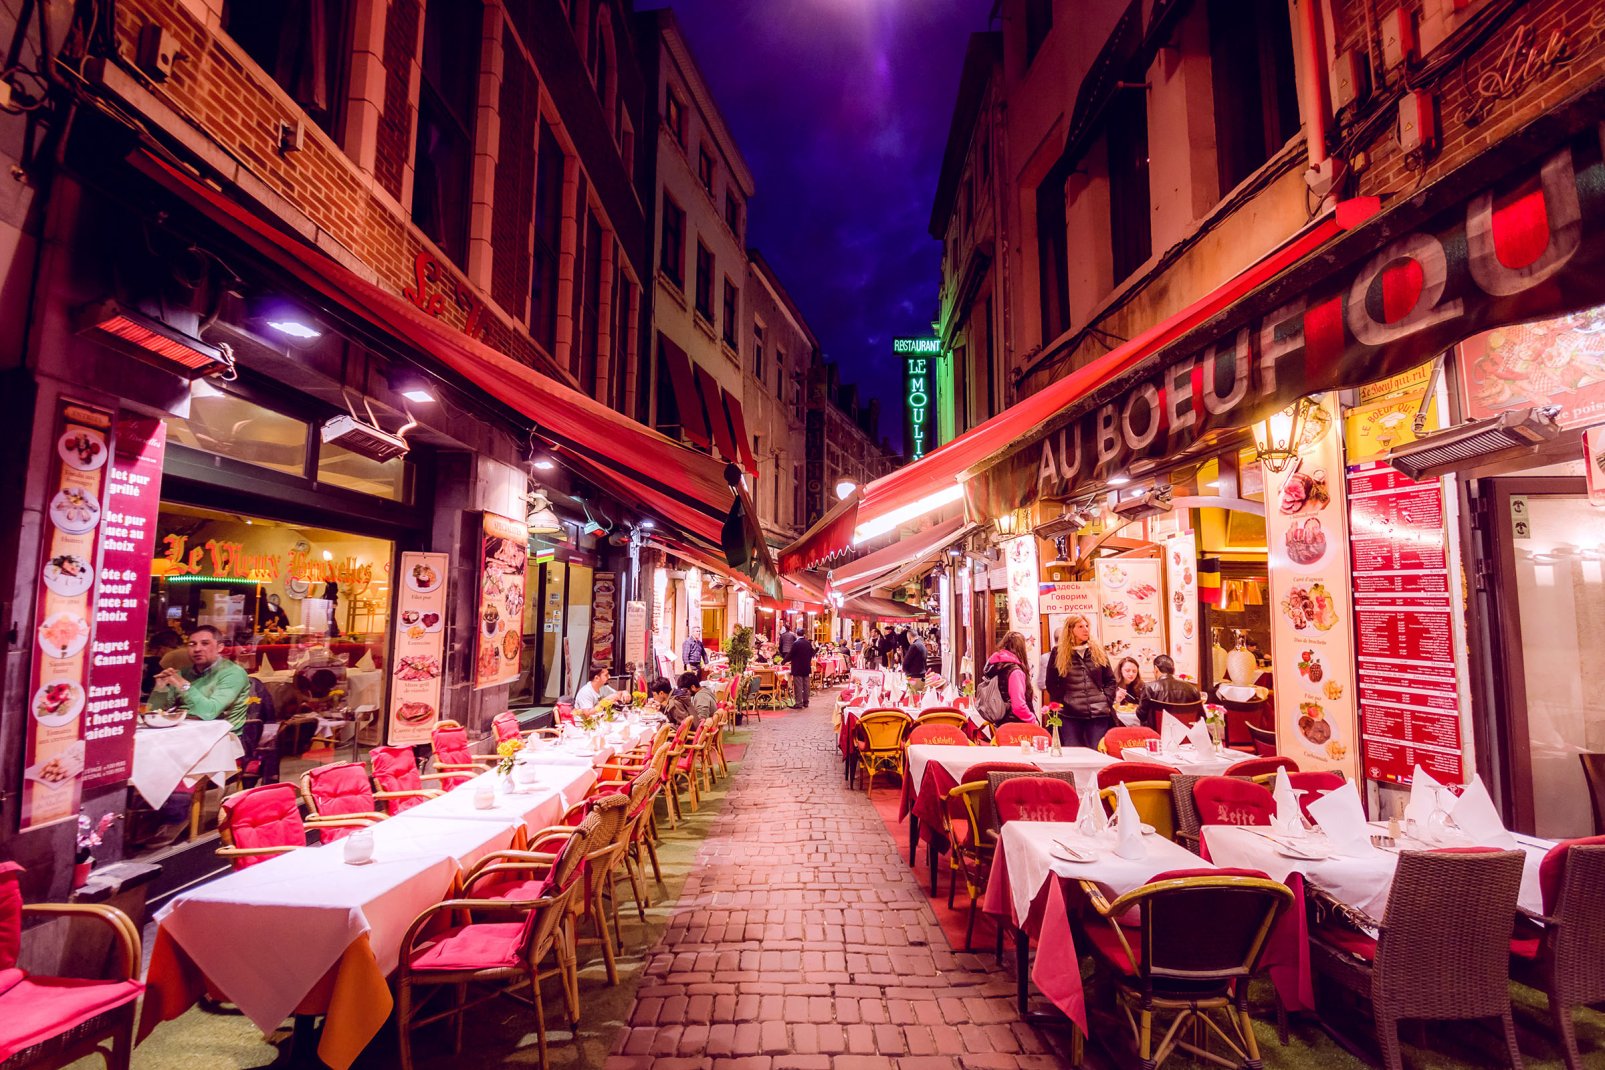 Des gourmands ne vont à Bruxelles que pour cette rue. Ici se succèdent les restaurants où vous pourrez déguster l'intégralité de la gastronomie belge, remarquable, dont la richesse fait penser à la française.